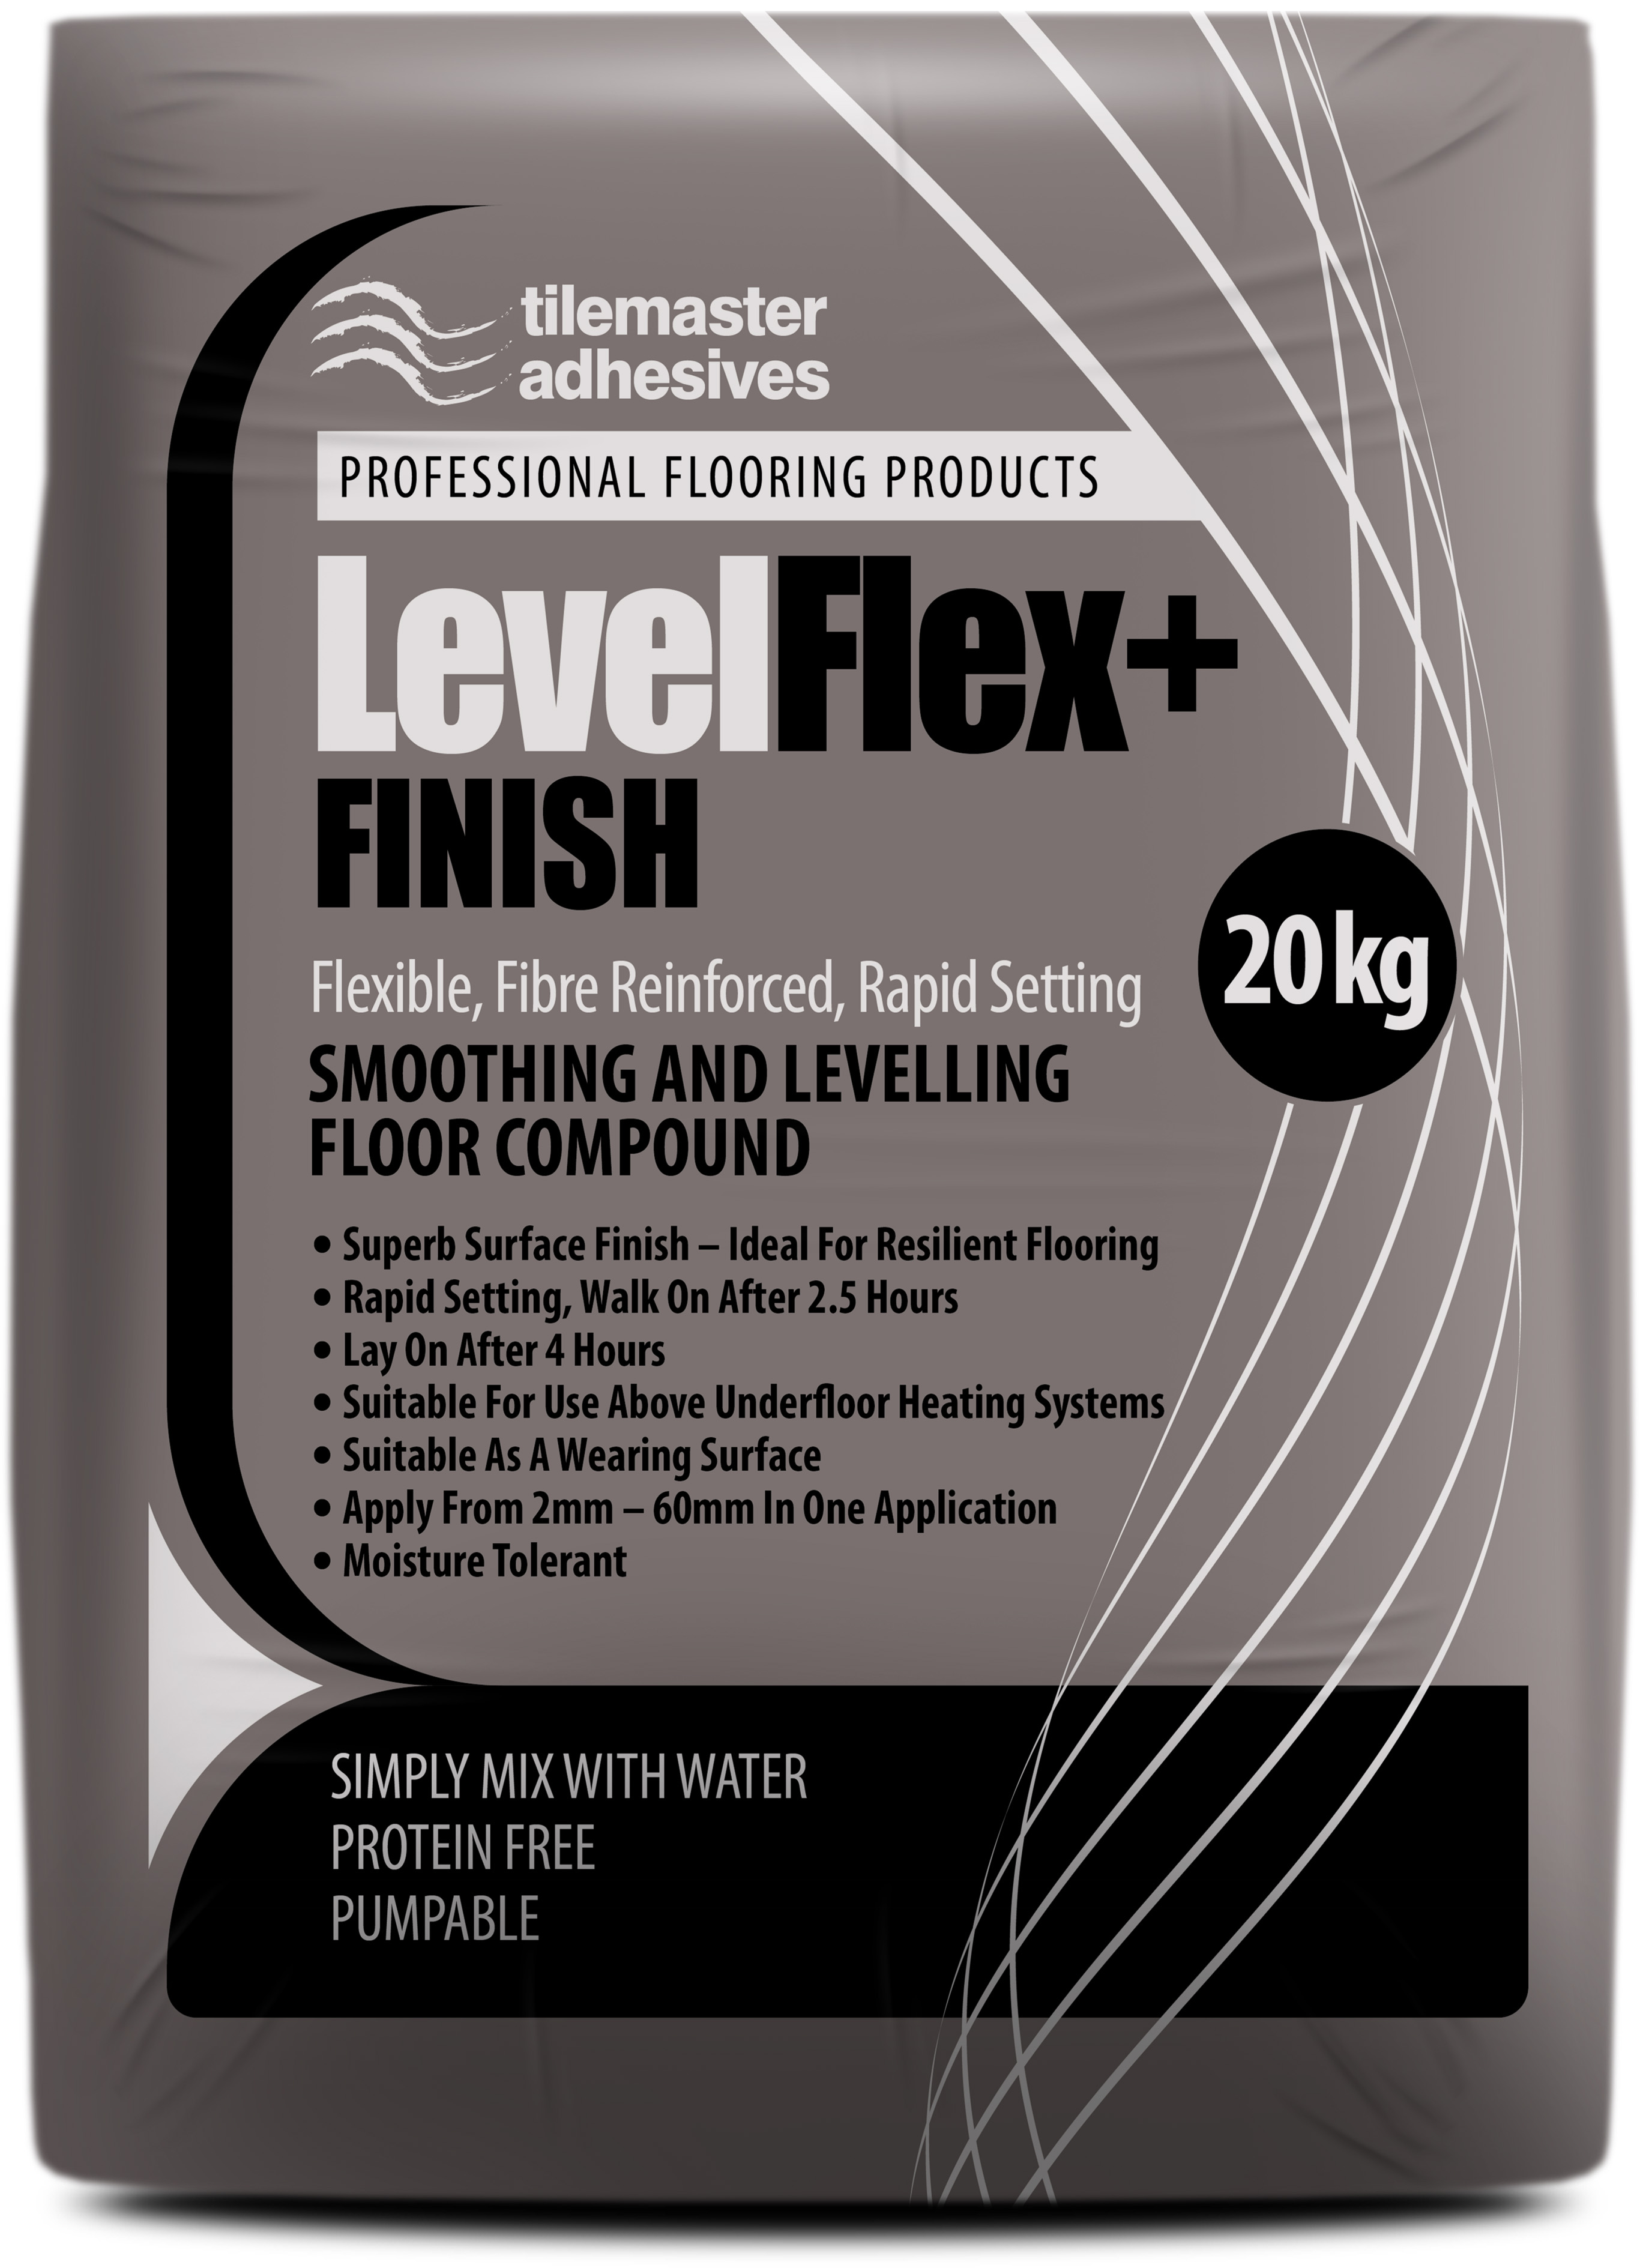 LevelFlex+ FINISH